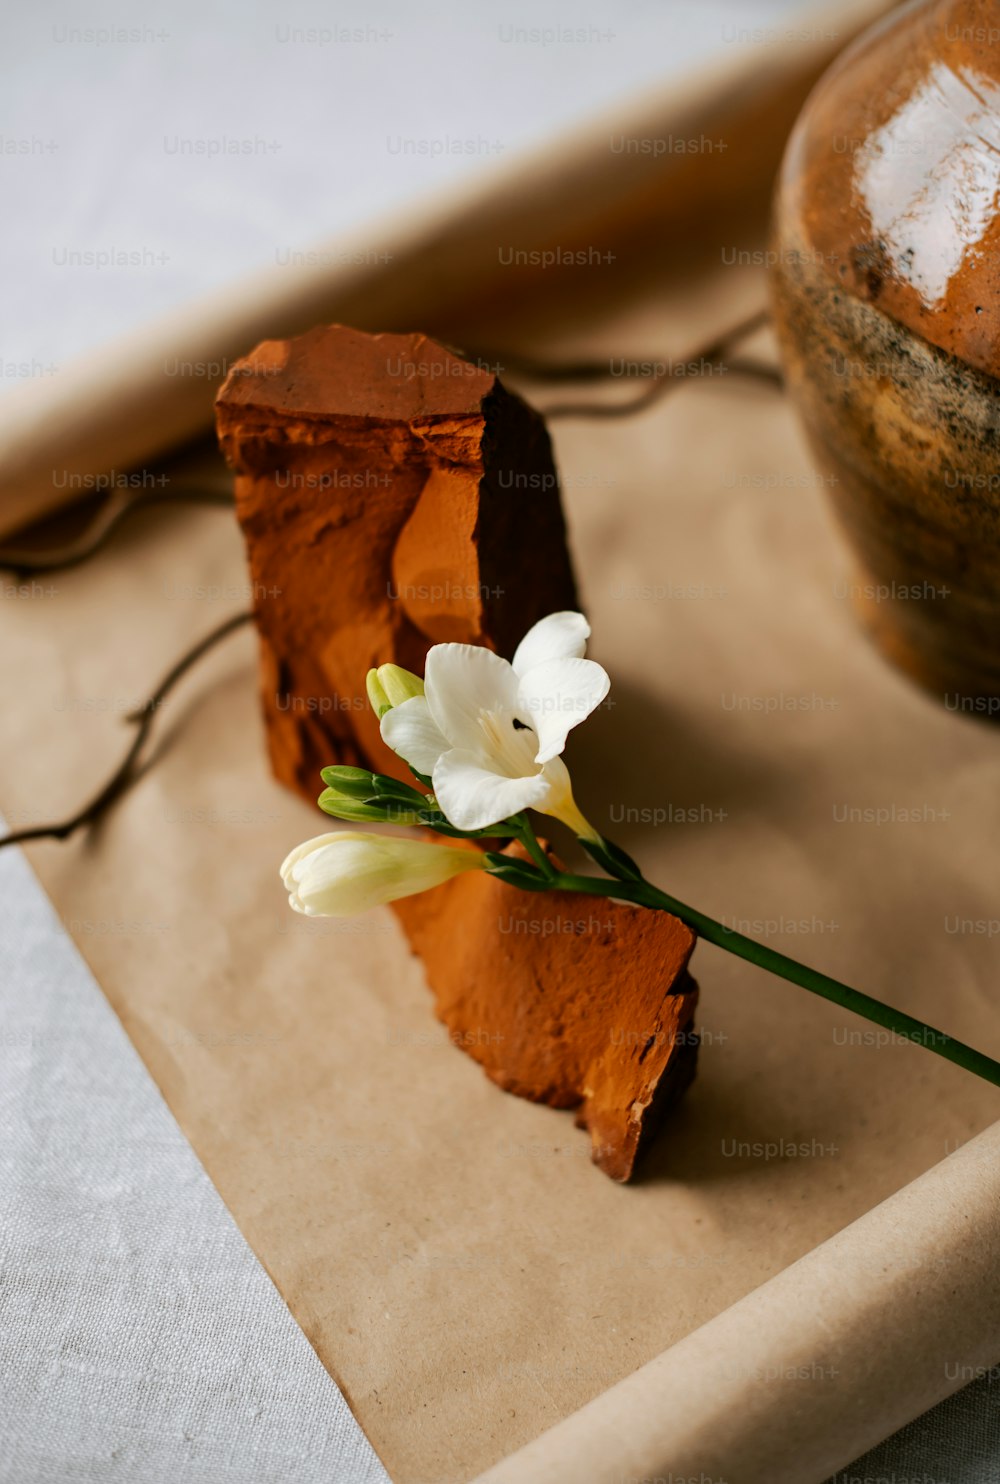 Ein Stück Kuchen mit einer Blume oben drauf